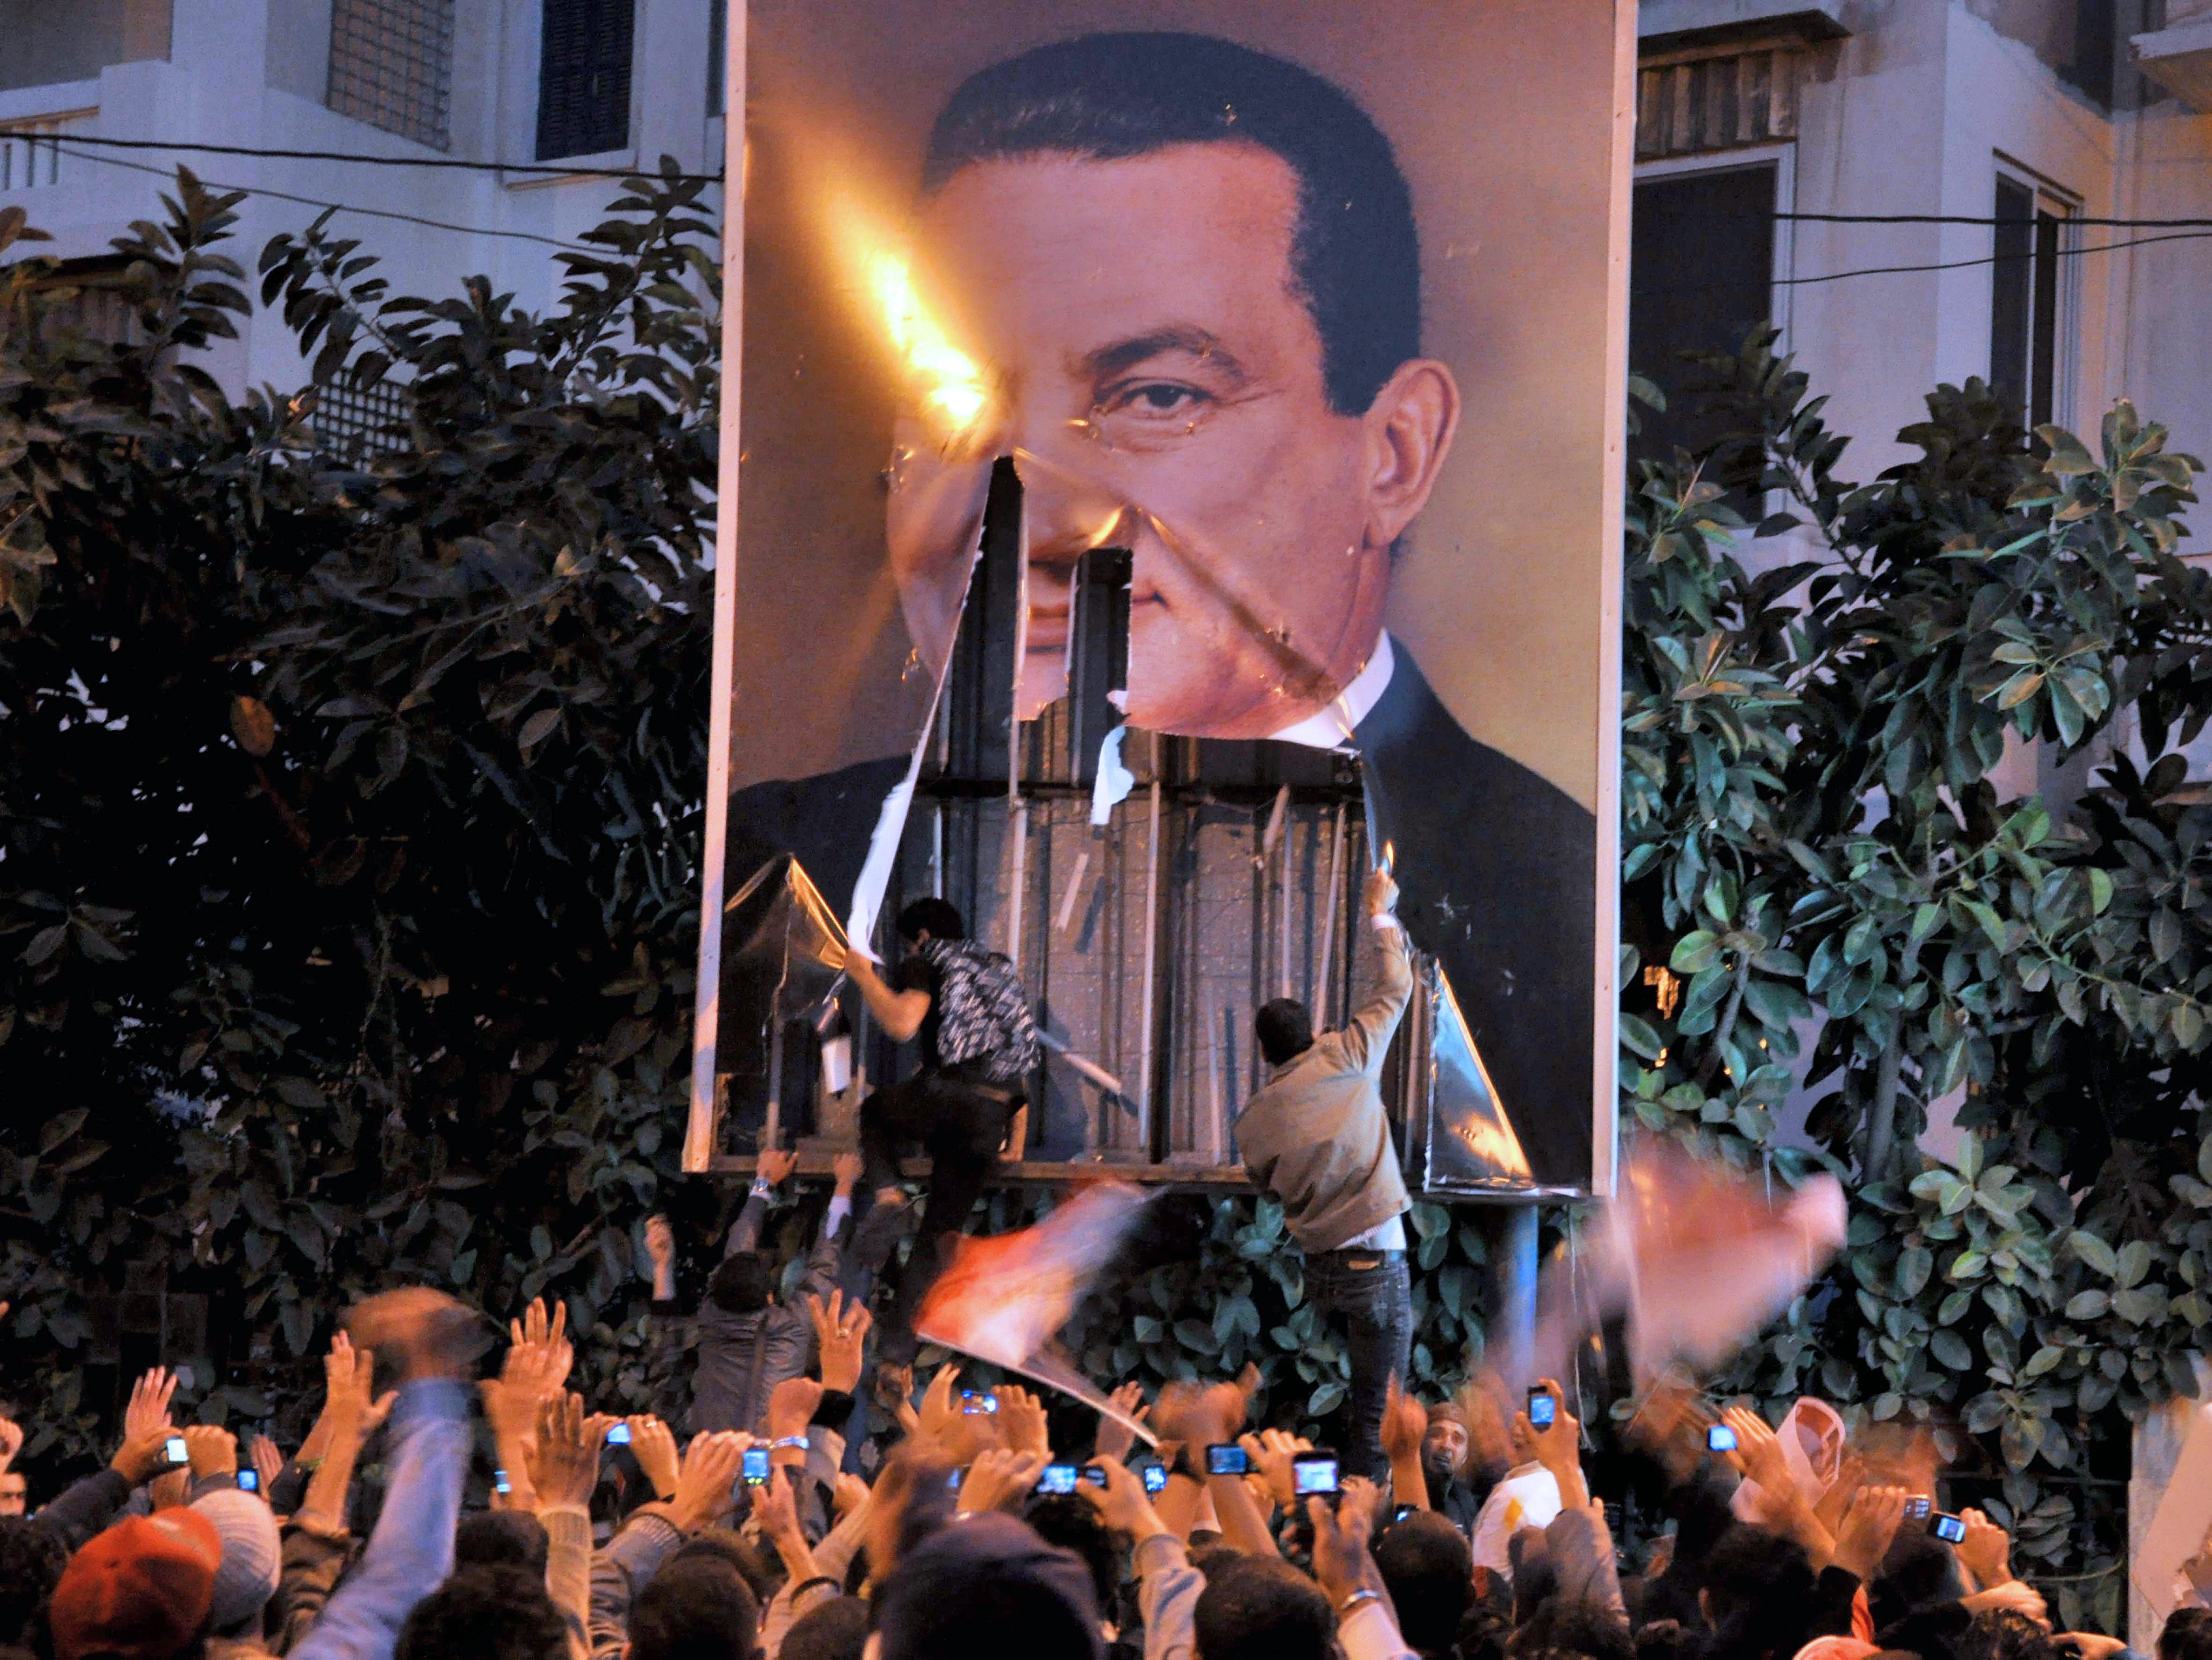 Няма да бягам, ще умра на тази земя, категоричен е президентът Хосни Мубарак въпреки протестите срещи него